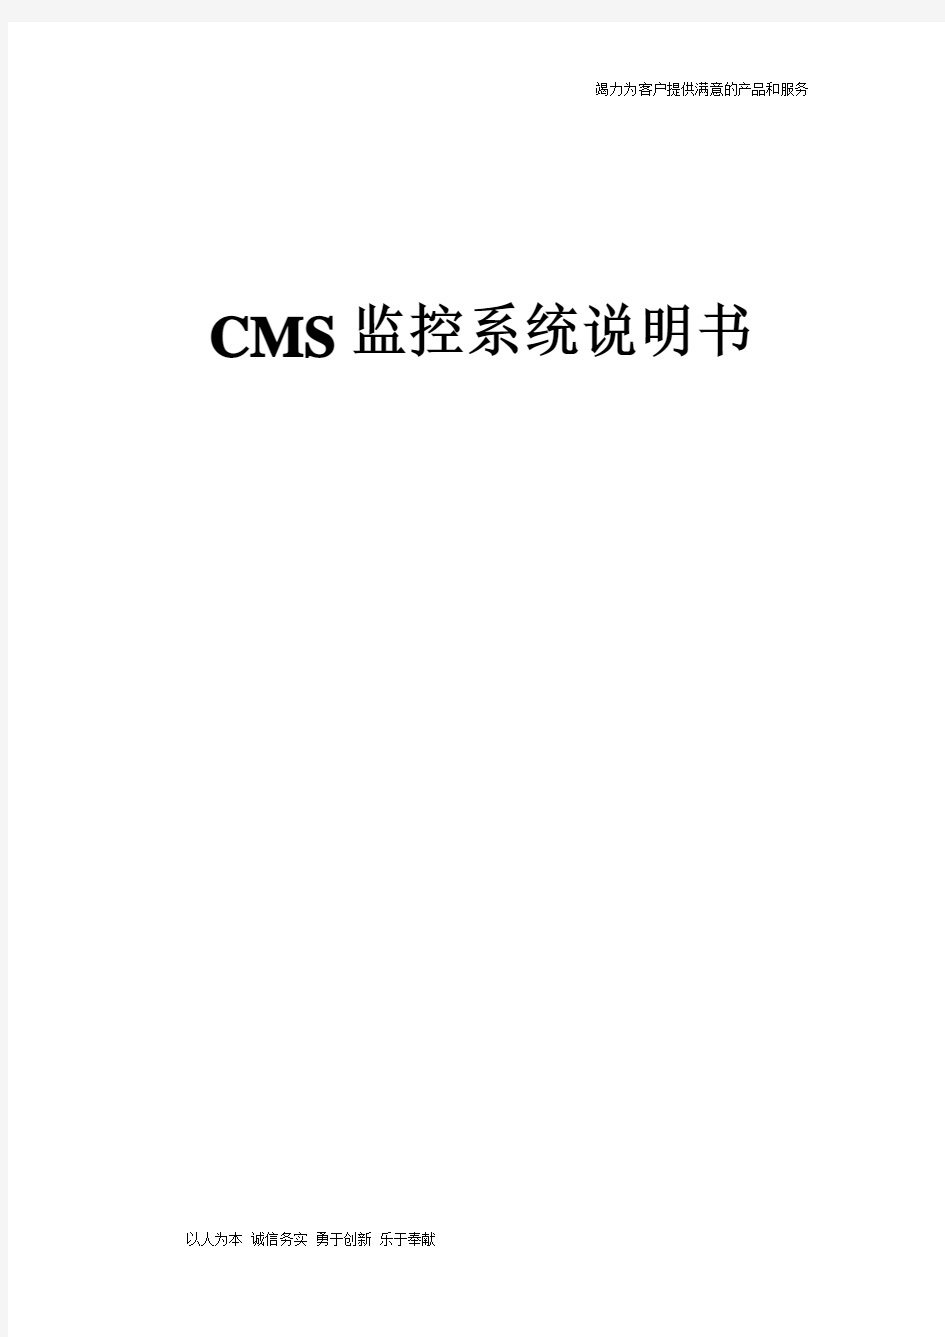 CMS监控系统说明书-中文